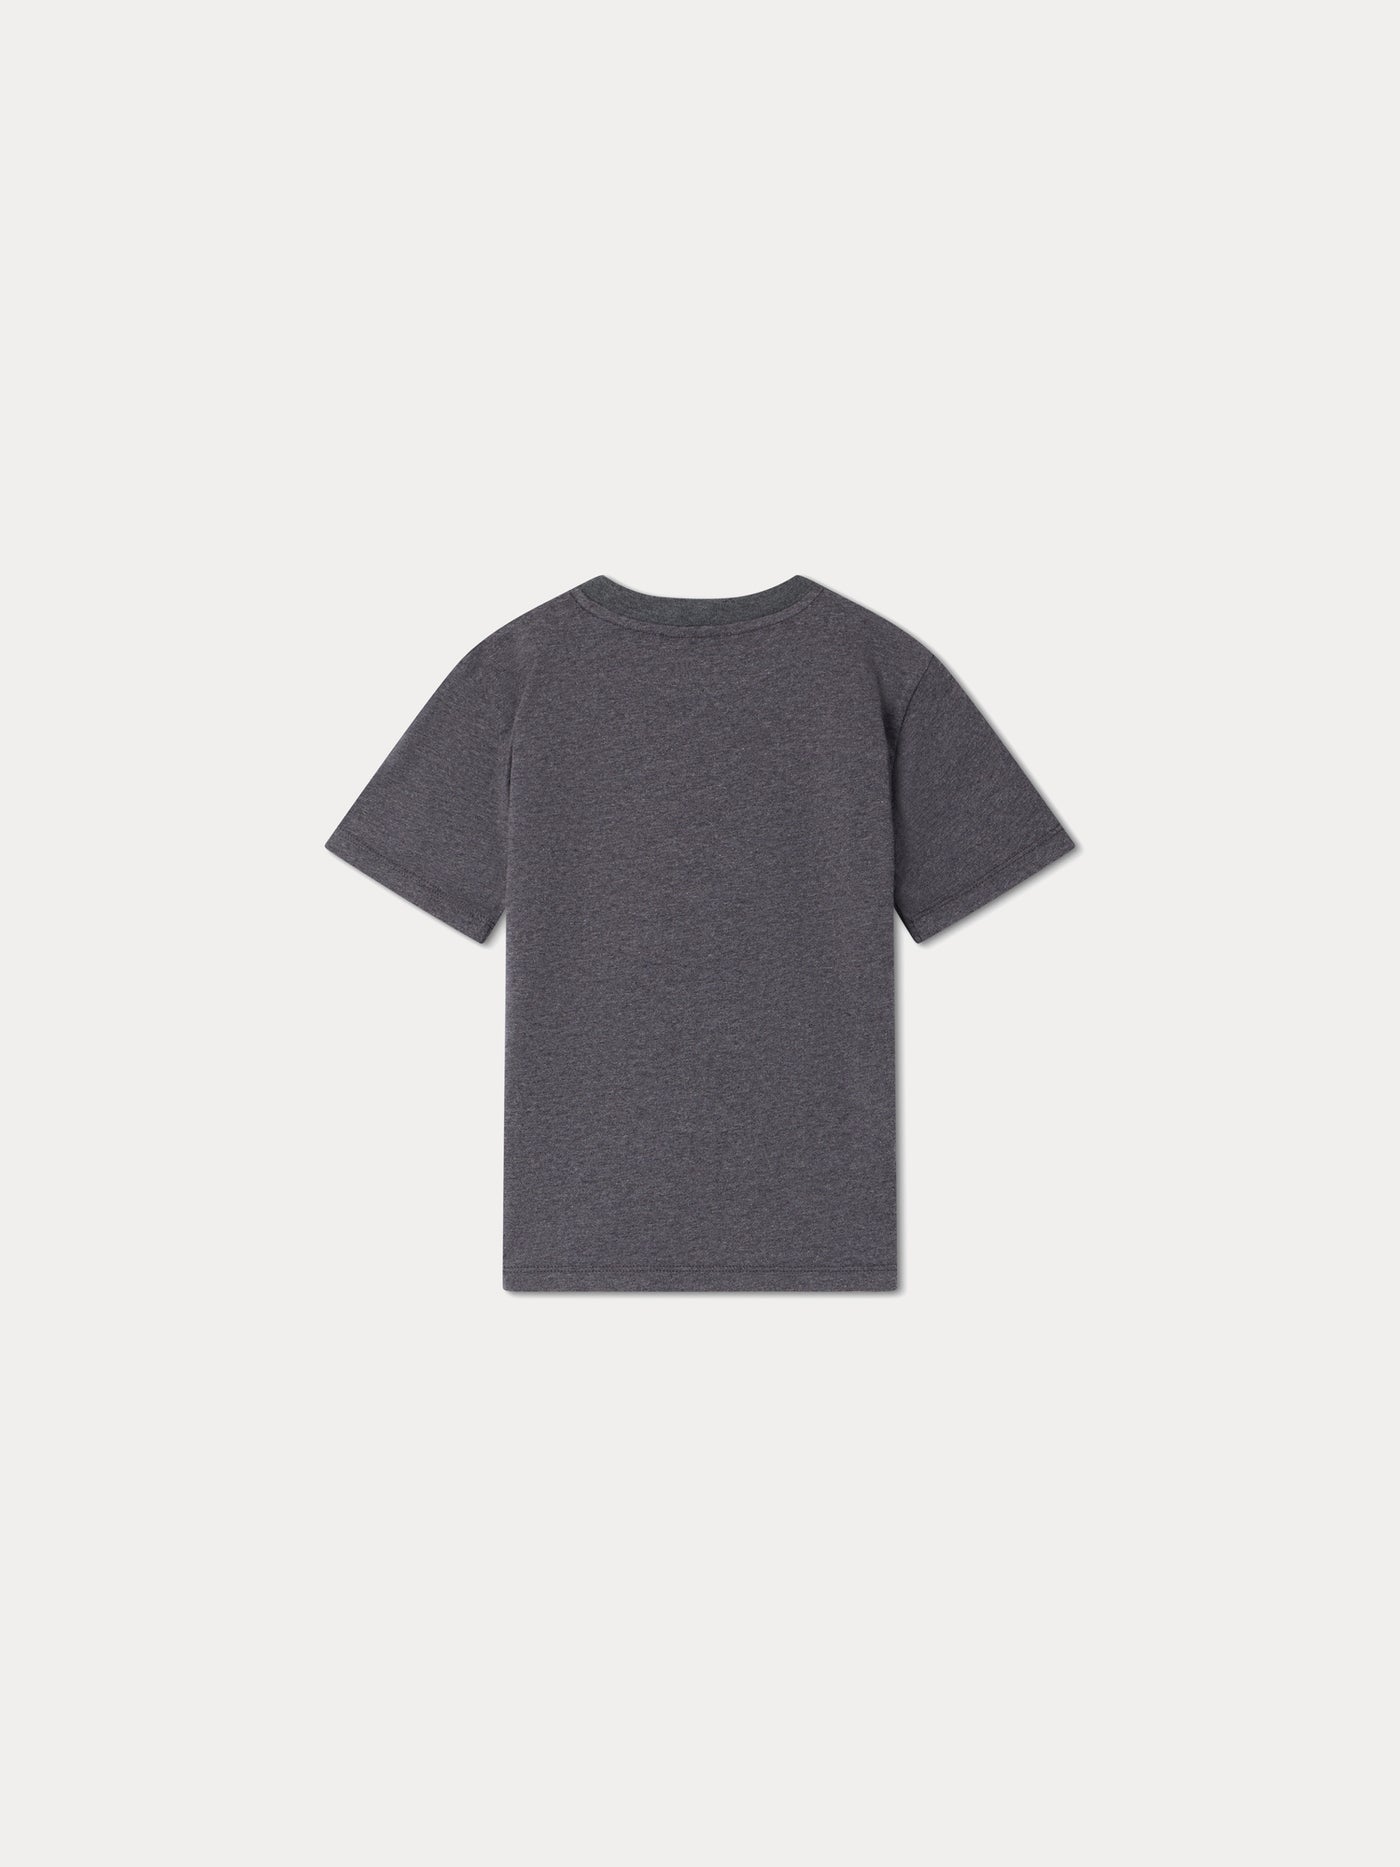 T-shirt Thibald gris chiné foncé